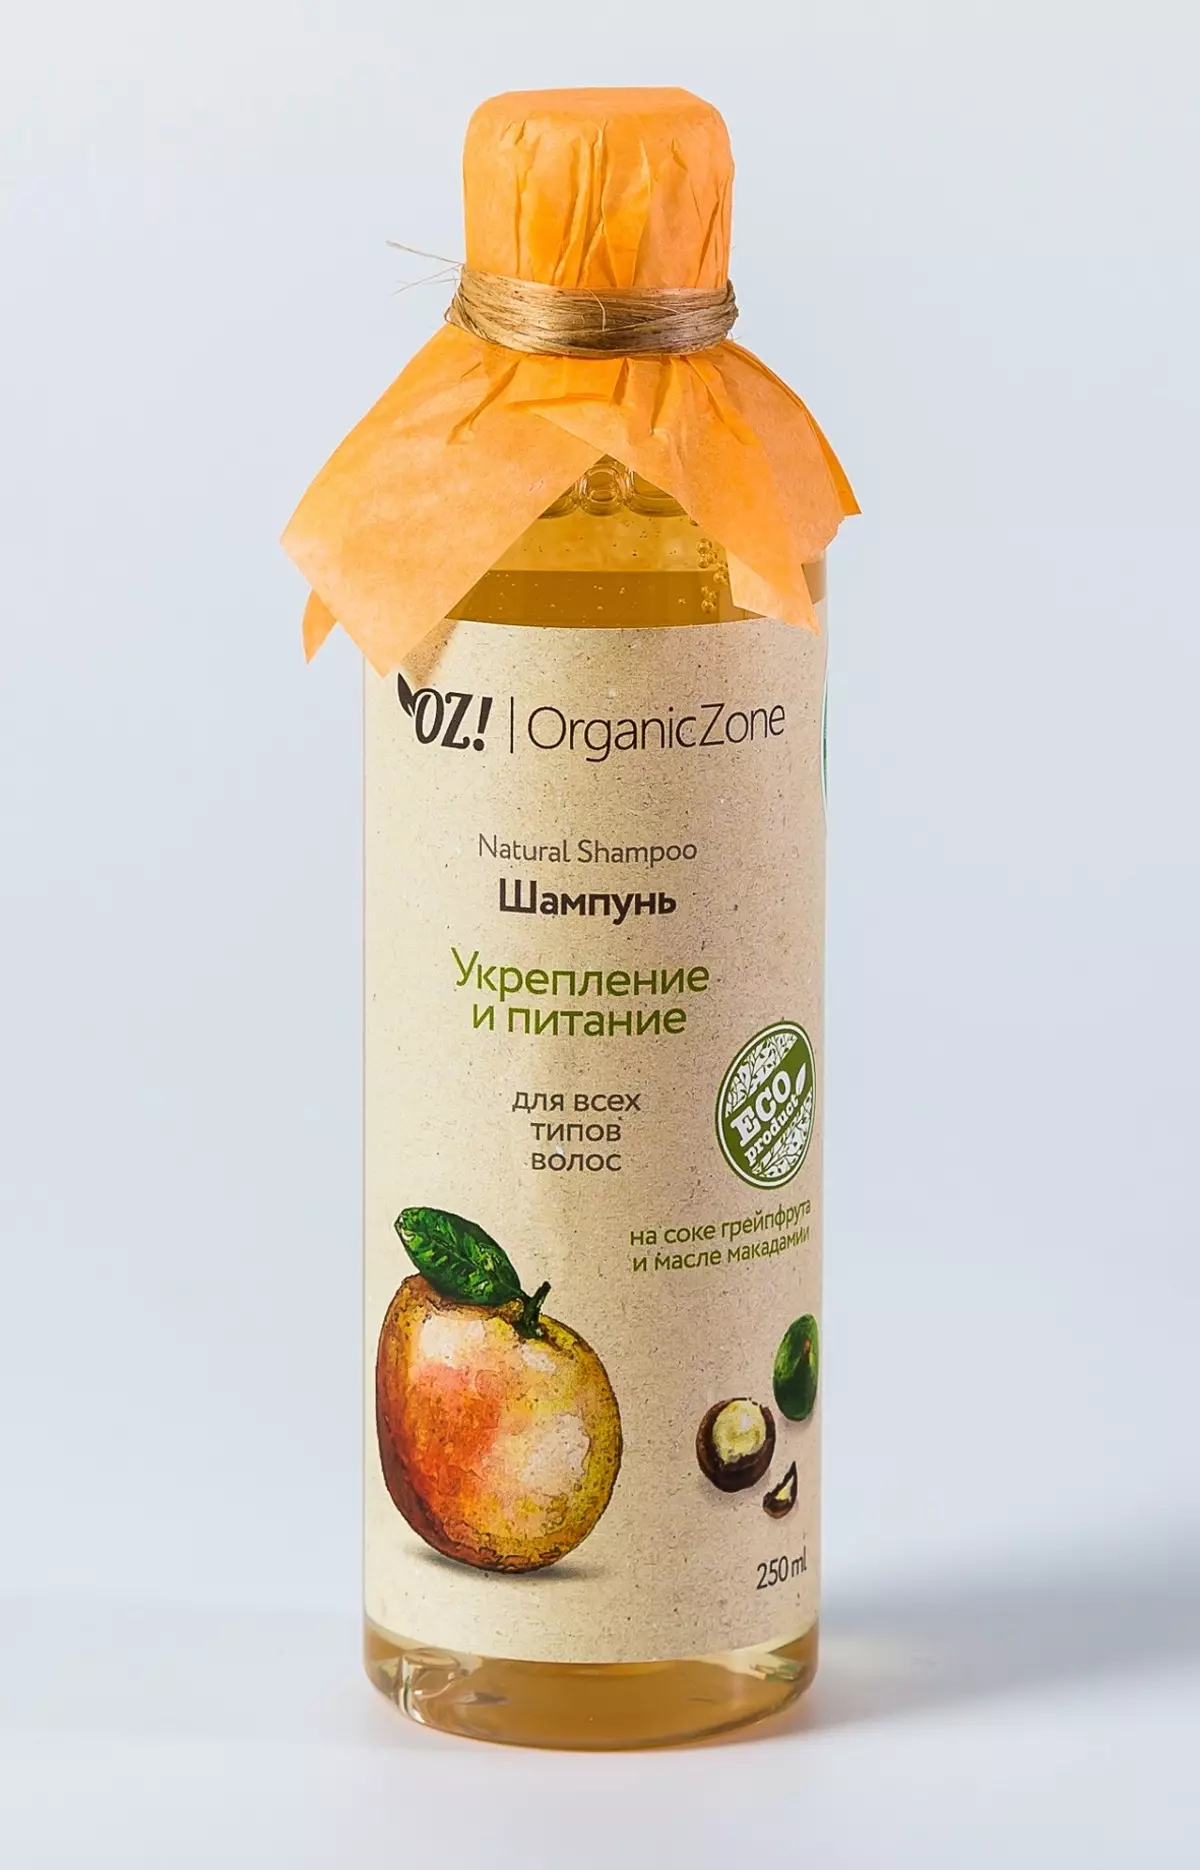 Kosmetikk oz! Organiczone: Produktoversikt, fordeler og ulemper, velg og vurderinger 4764_14